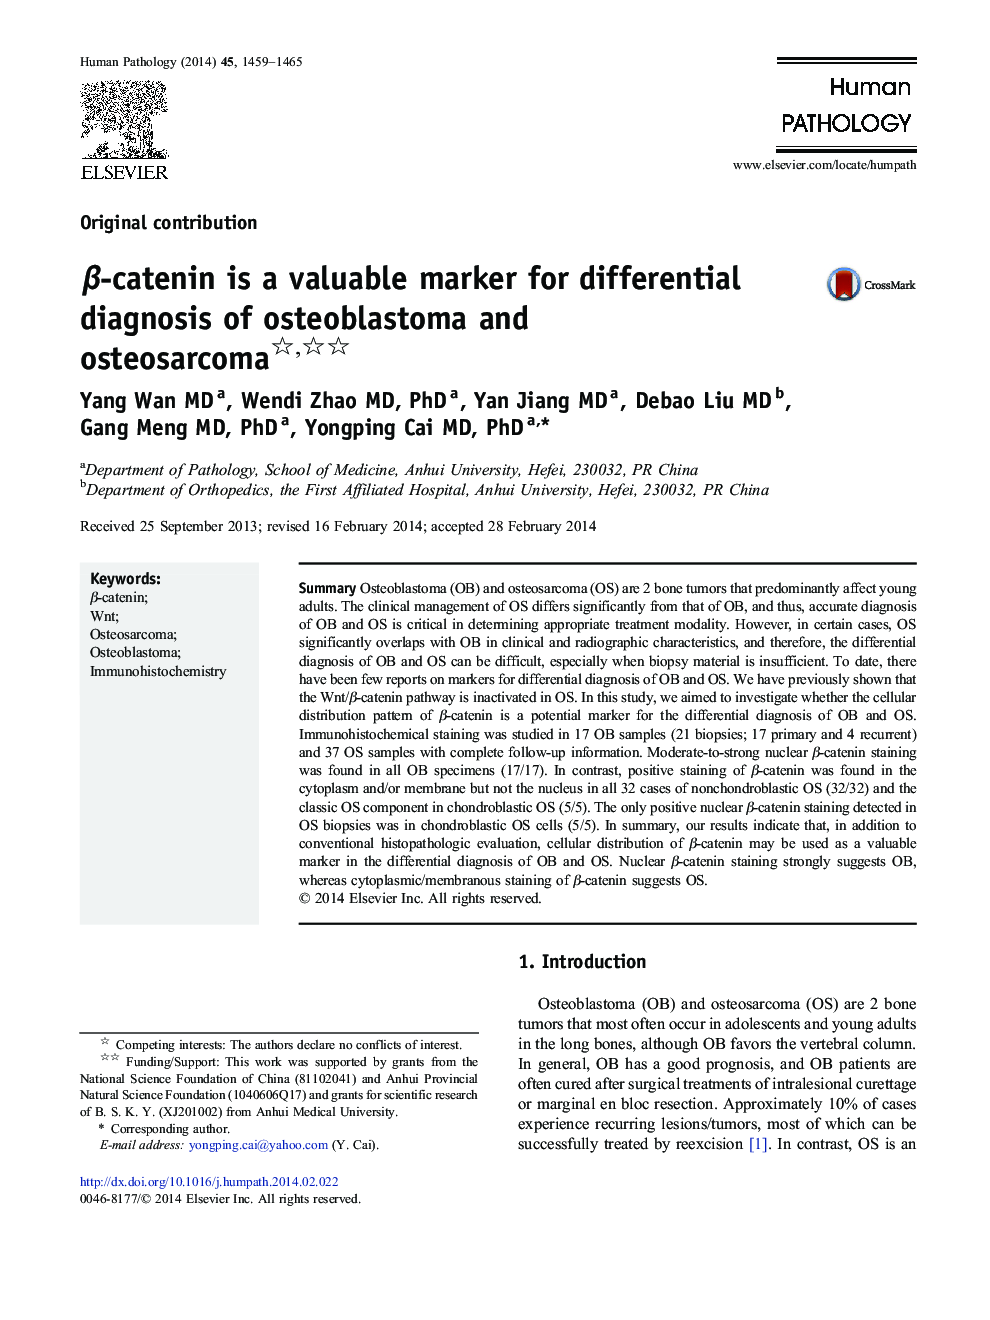 β-catenin is a valuable marker for differential diagnosis of osteoblastoma and osteosarcoma 